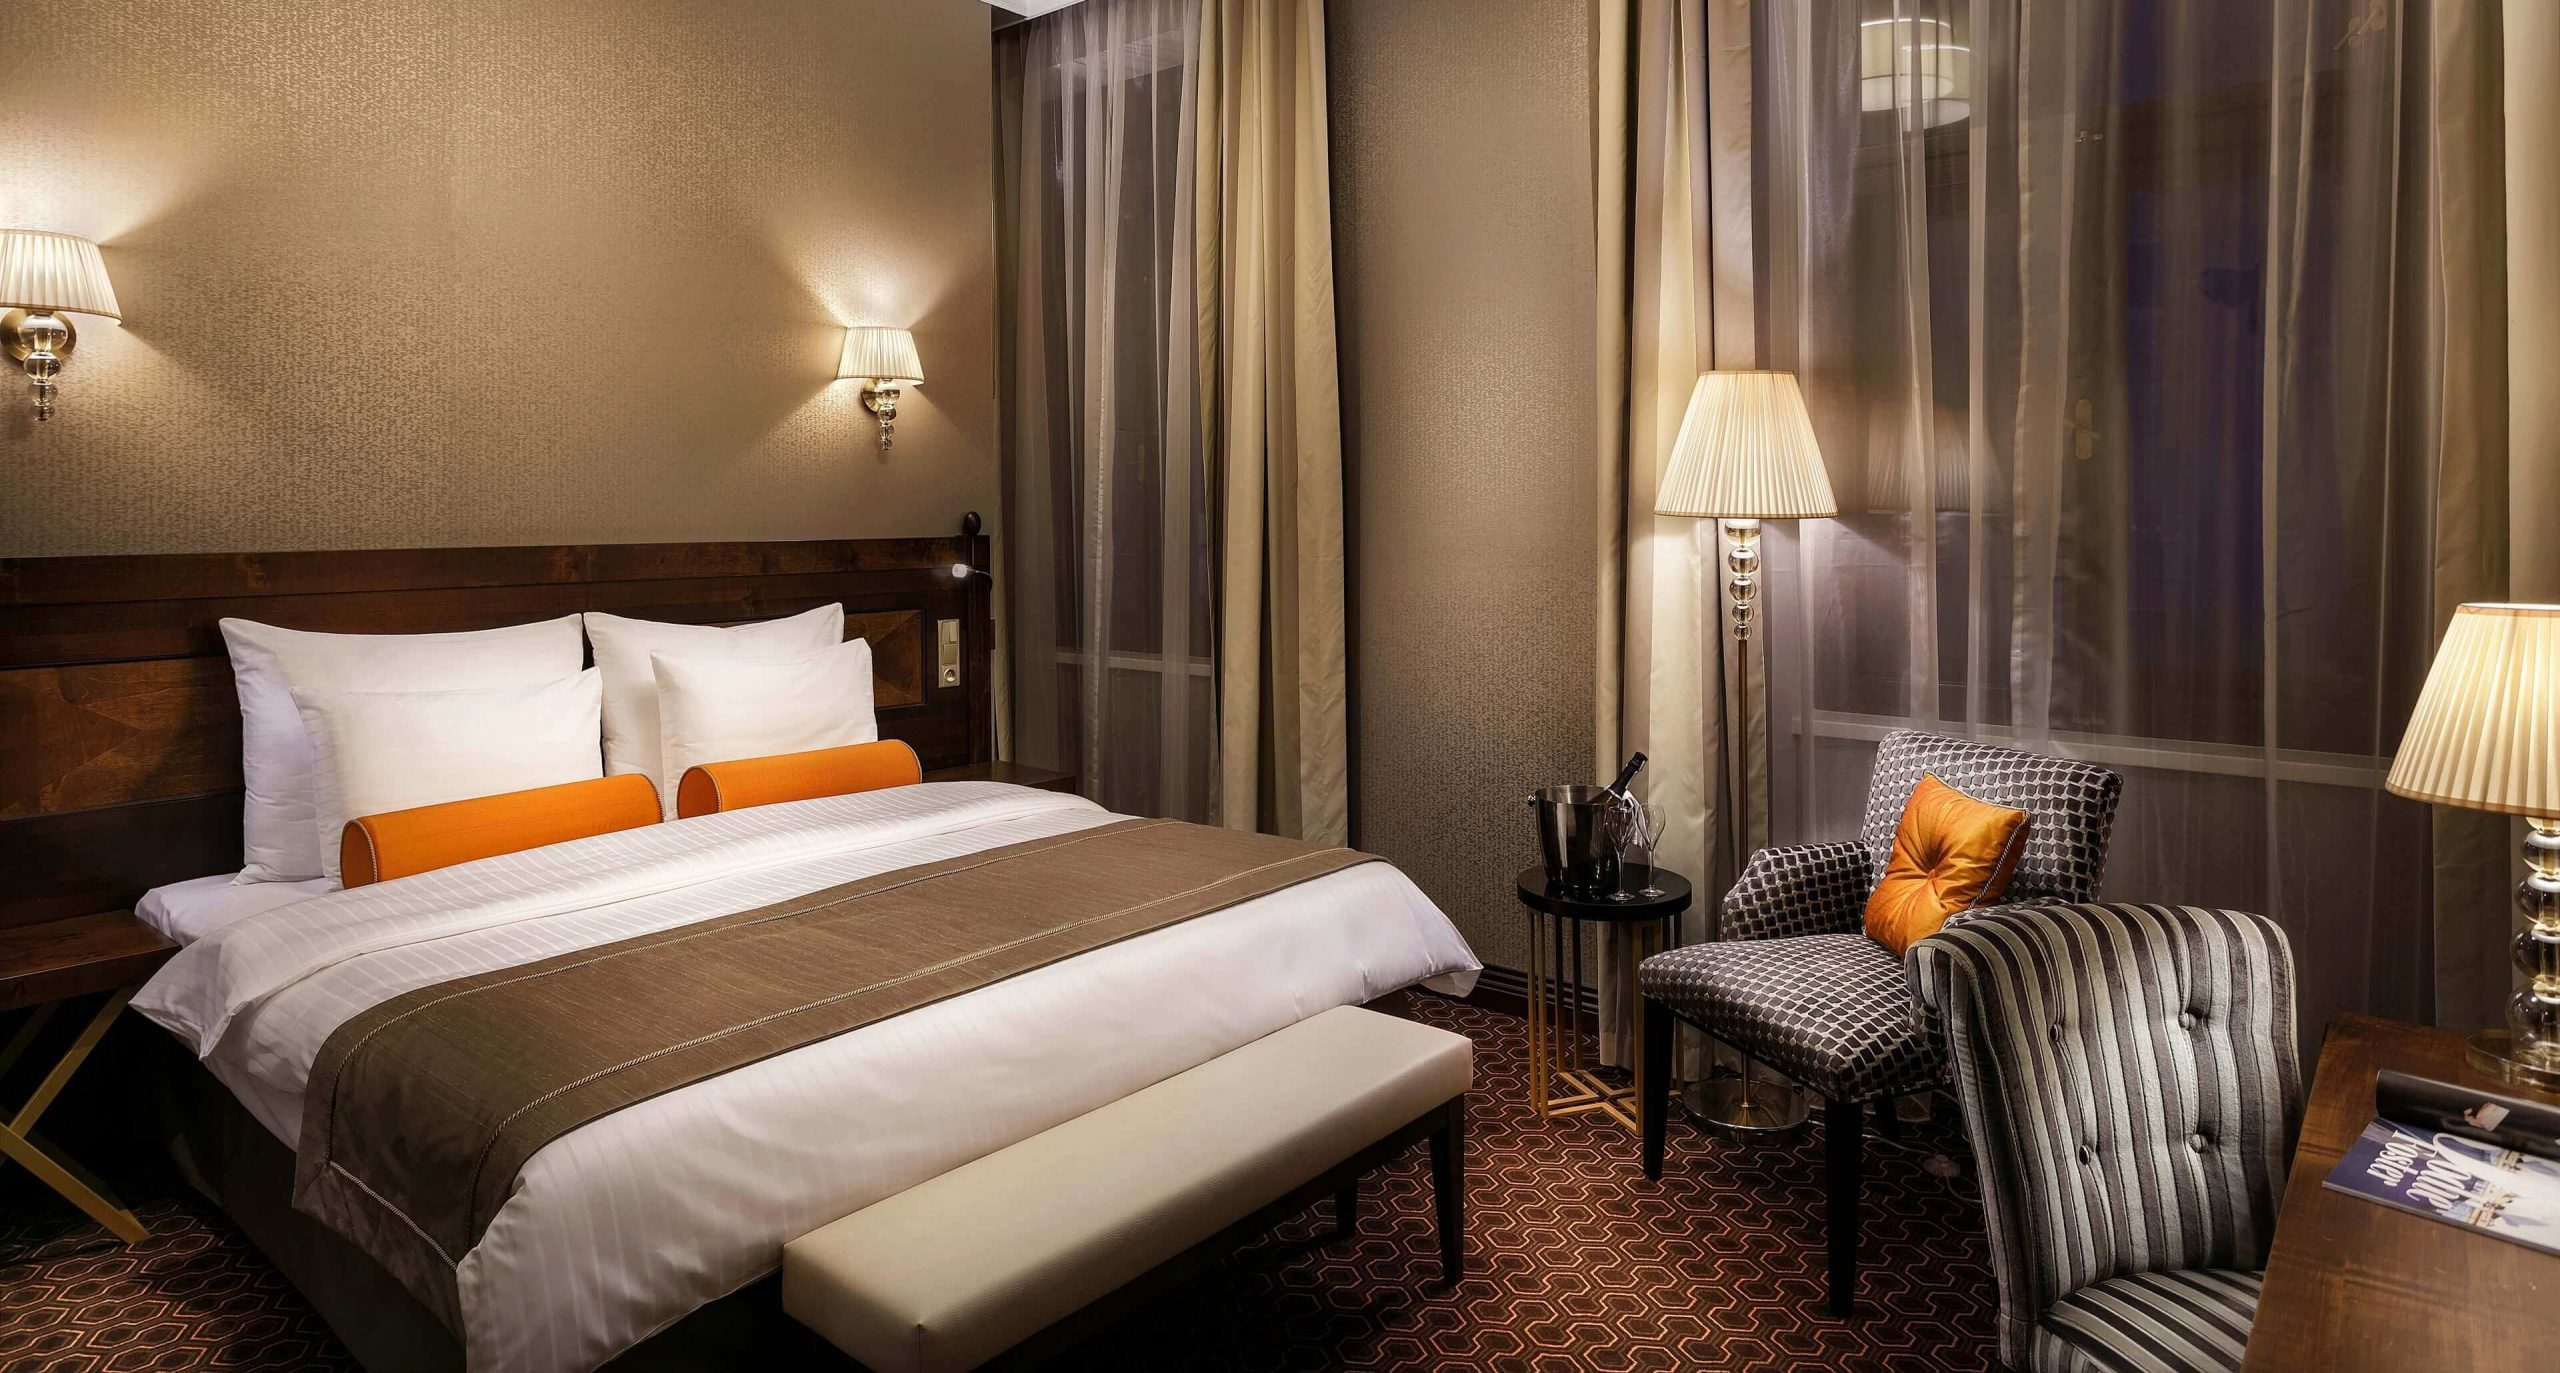 Dominantou hotelovej spálne je elegantná posteľ s čalúneným čelom.